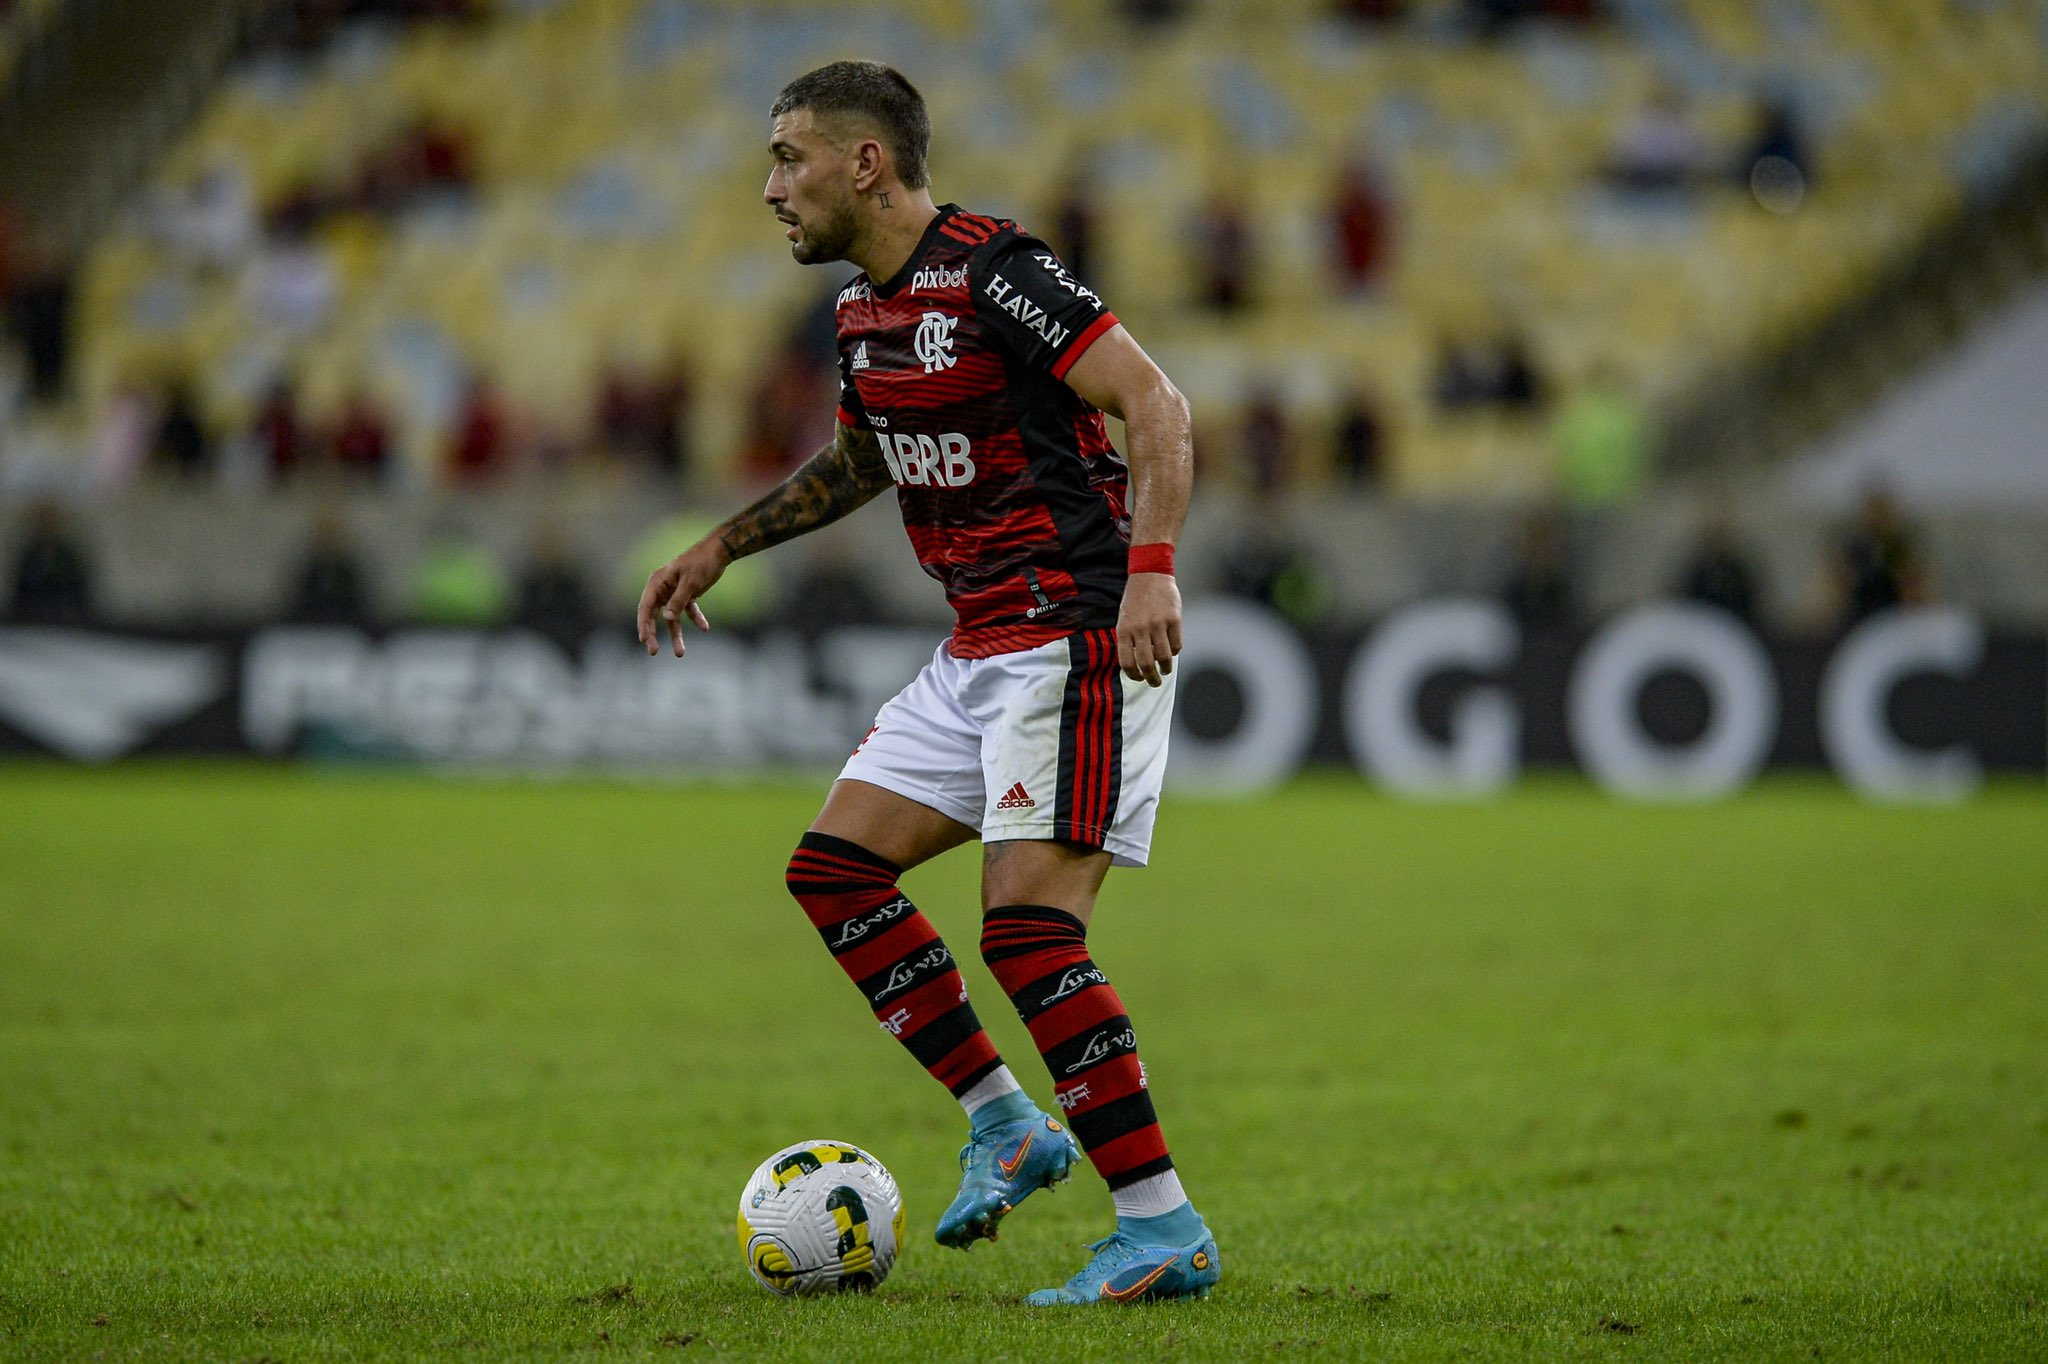 Precisava retomar o caminho das vitórias, elogia Arrascaeta sobre partida do Flamengo